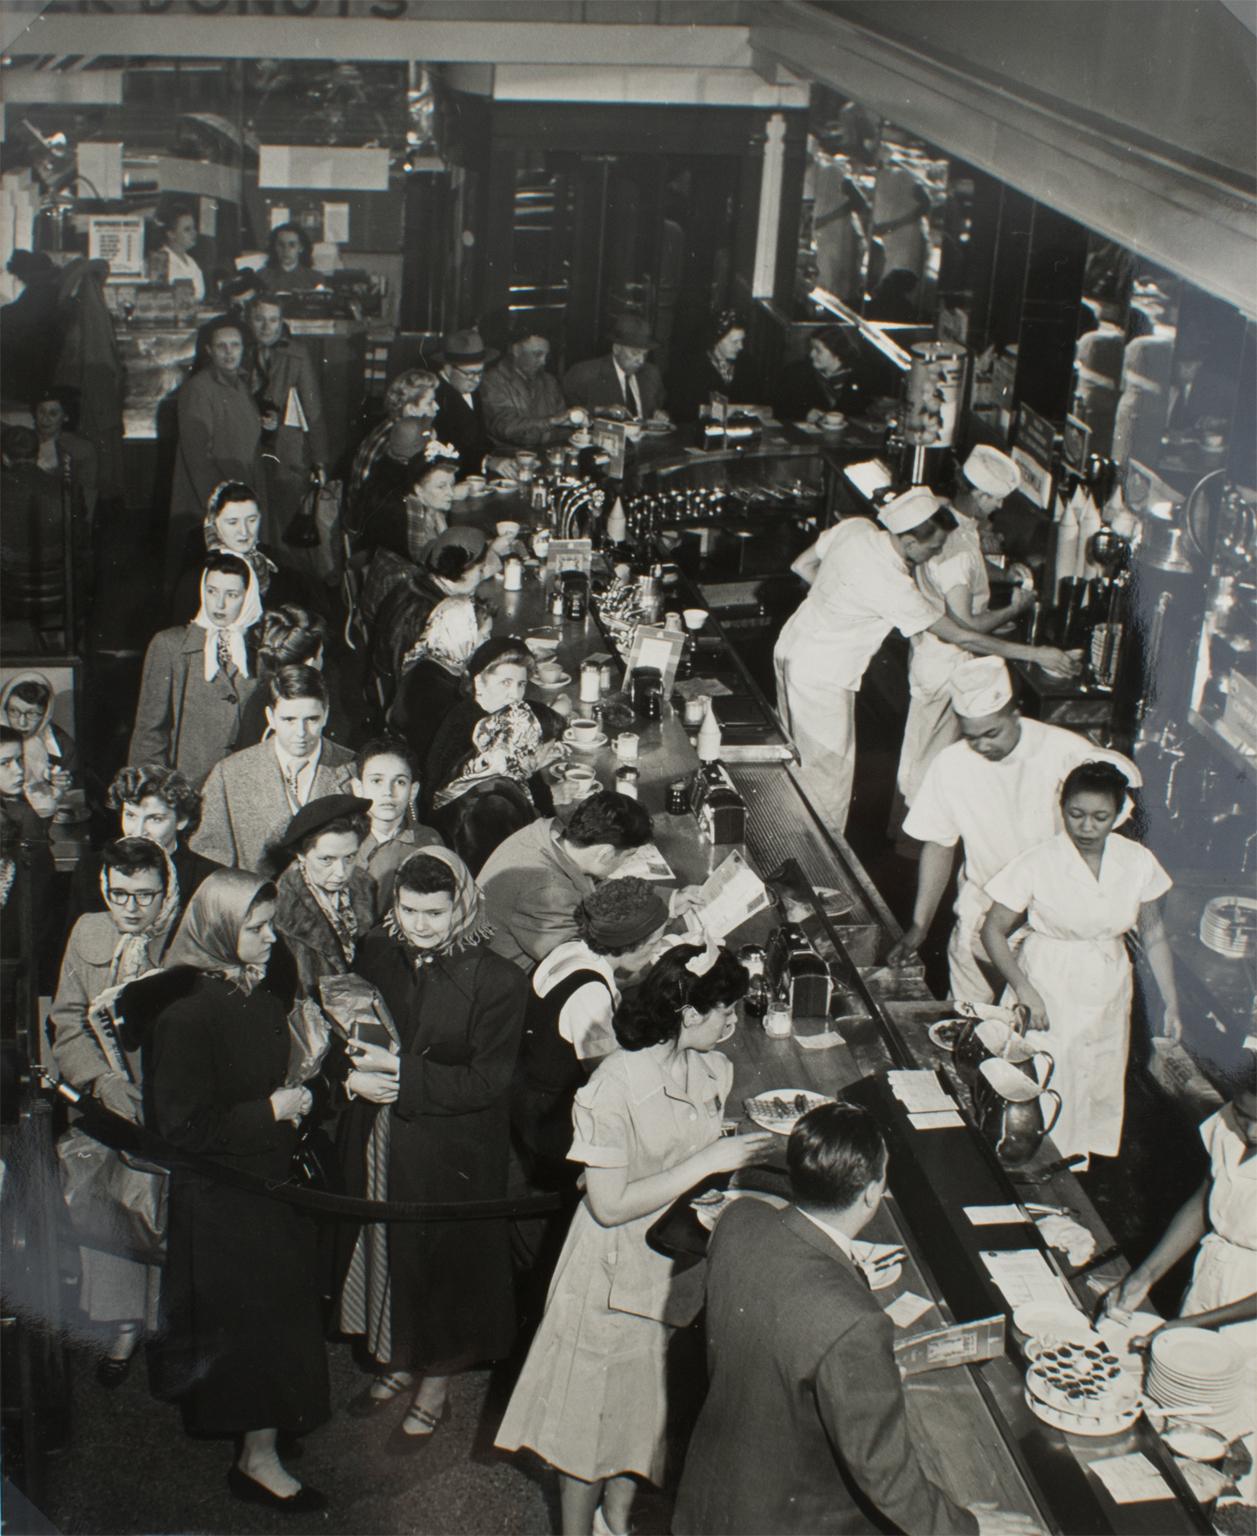 Silber-Gelatine-Schwarz-Weiß-Fotografie „A busy Diner in New York“, 1950